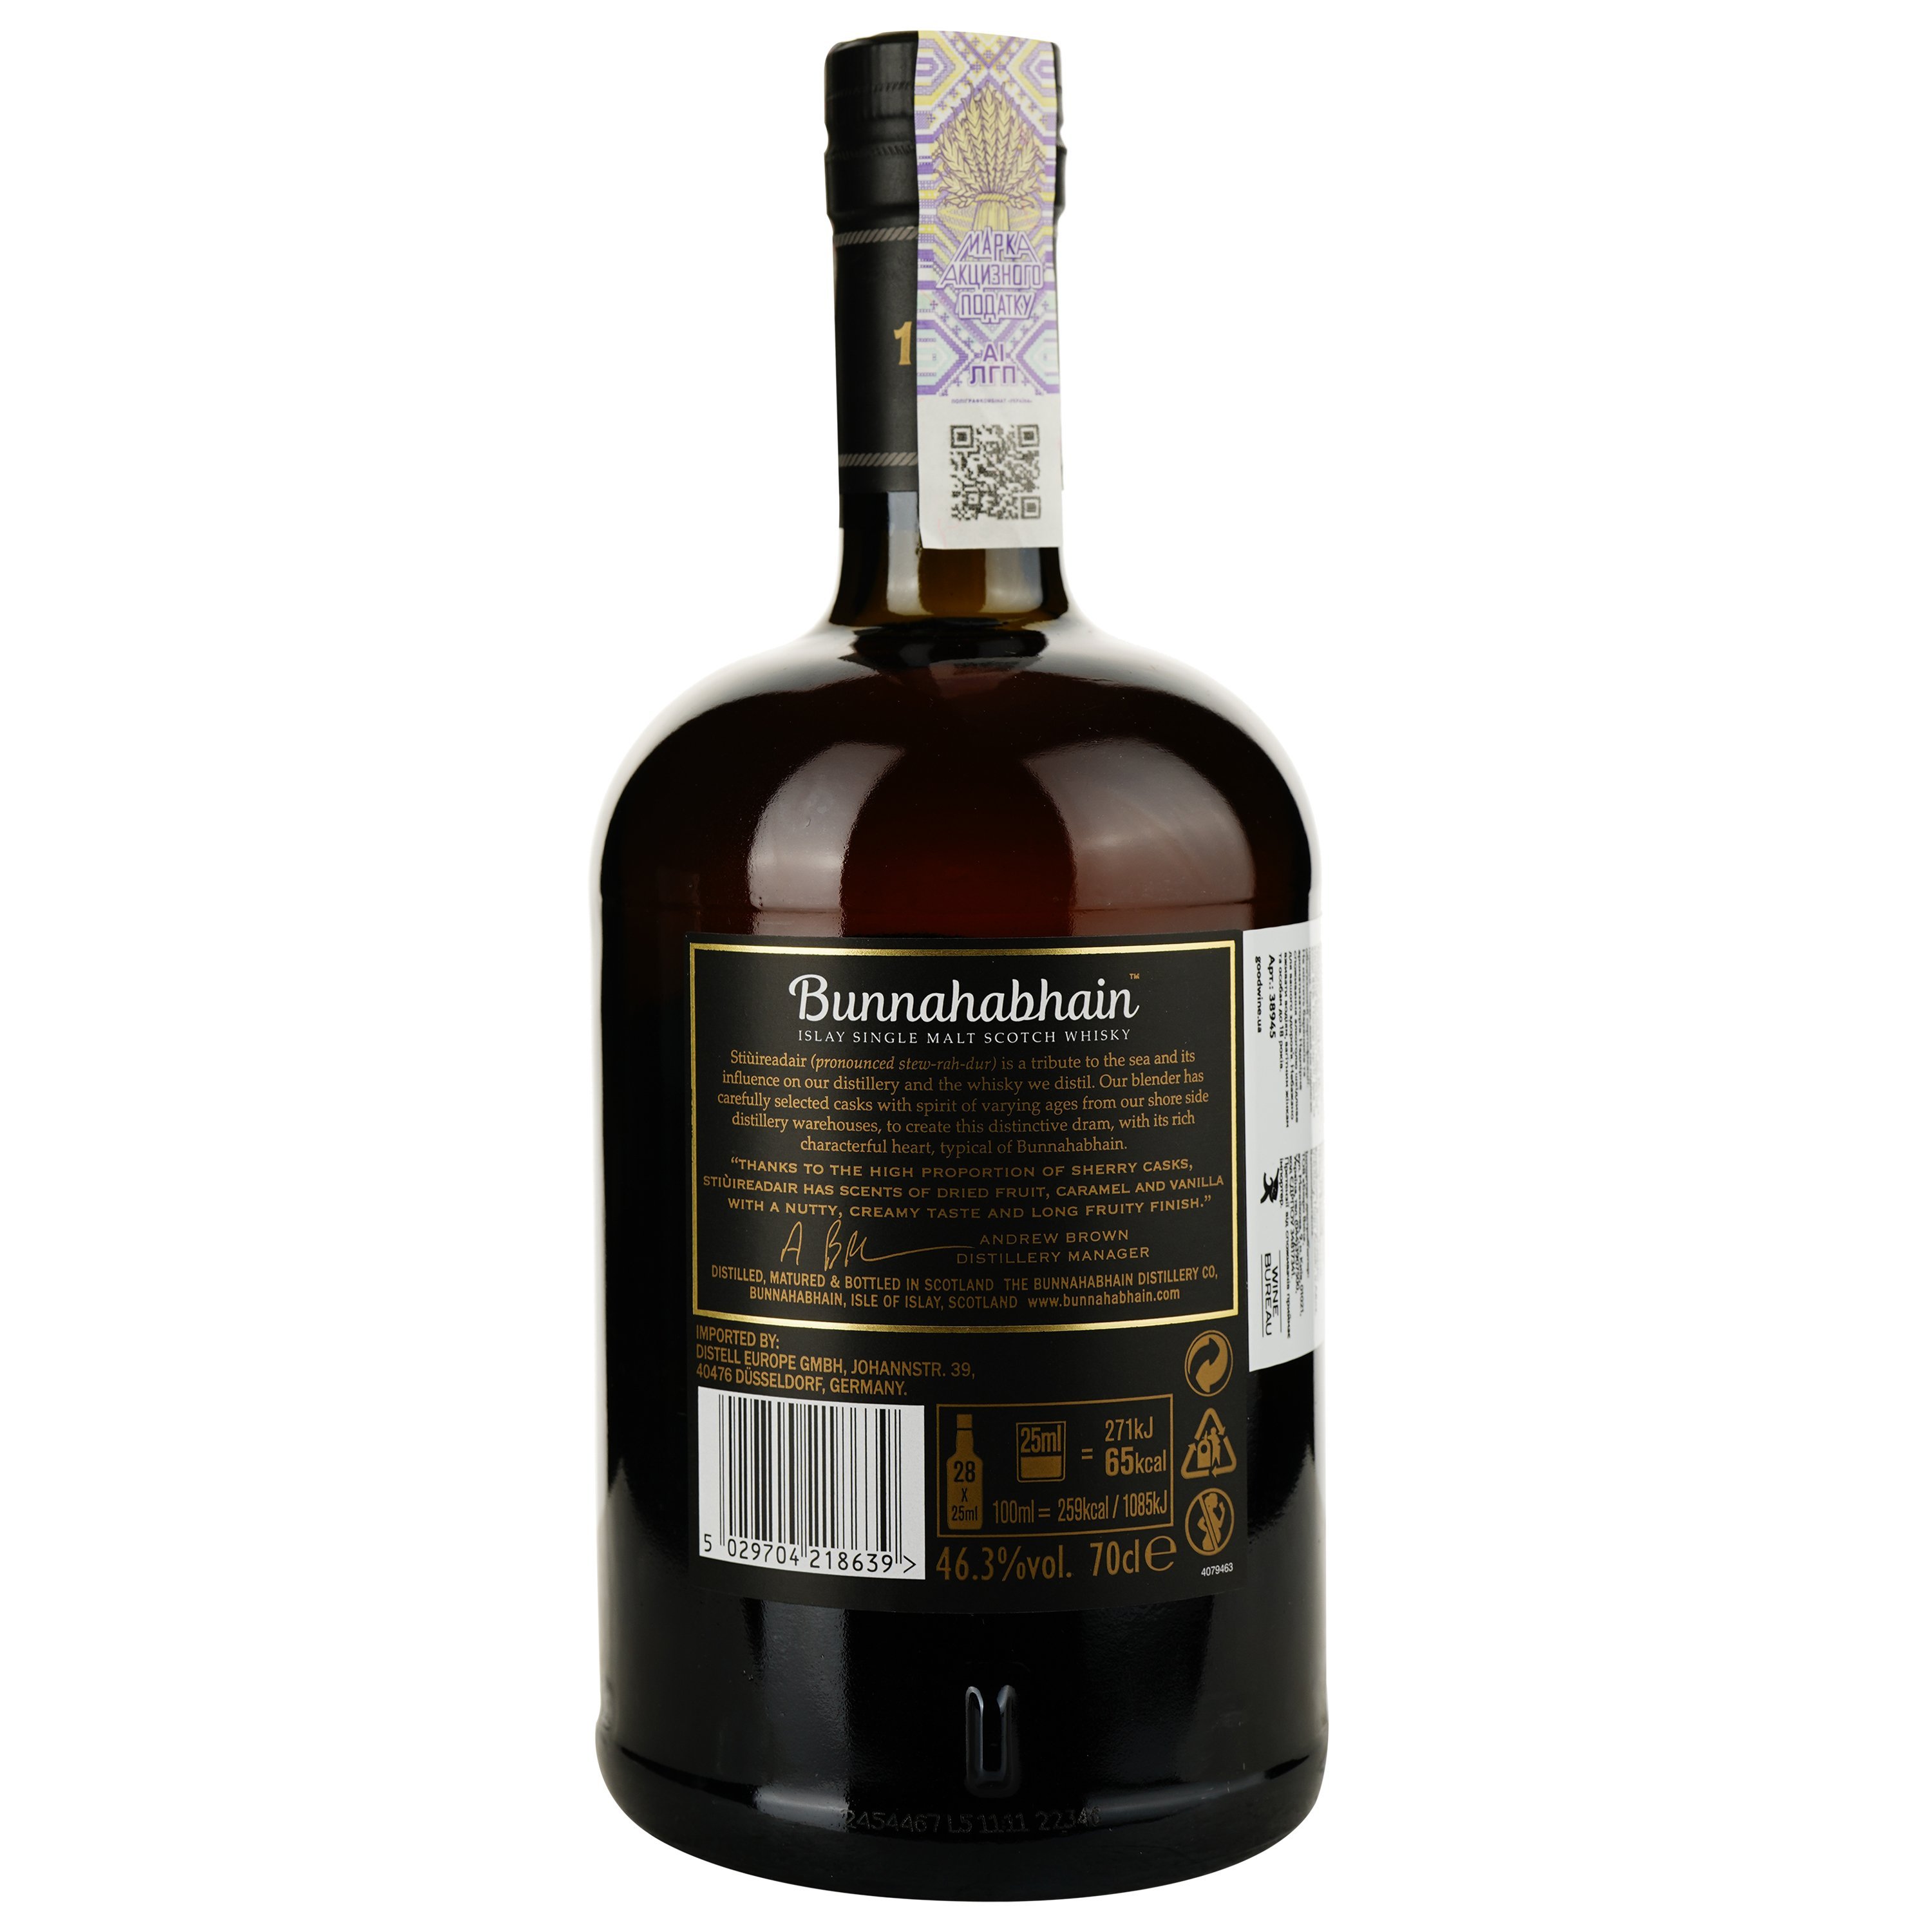 Виски Bunnahabhain Stiuireadair Single Malt Scotch Whisky 46.3% 0.7 л, в подарочной упаковке - фото 3